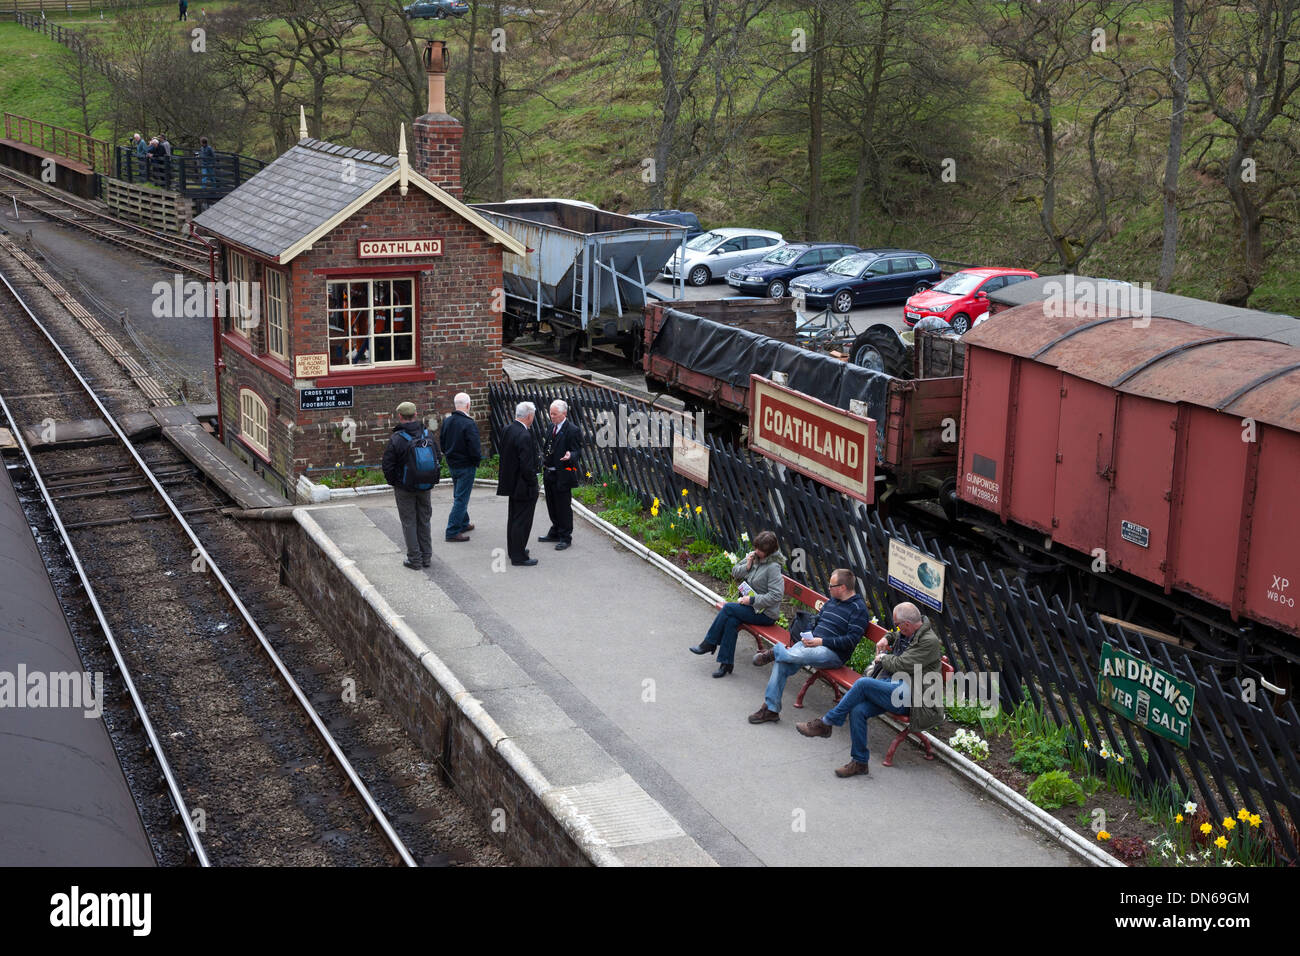 Las personas esperan la llegada de un tren en la plataforma de la estación de tren norte Yorks Goathland Moor Railway Yorkshire UK Foto de stock